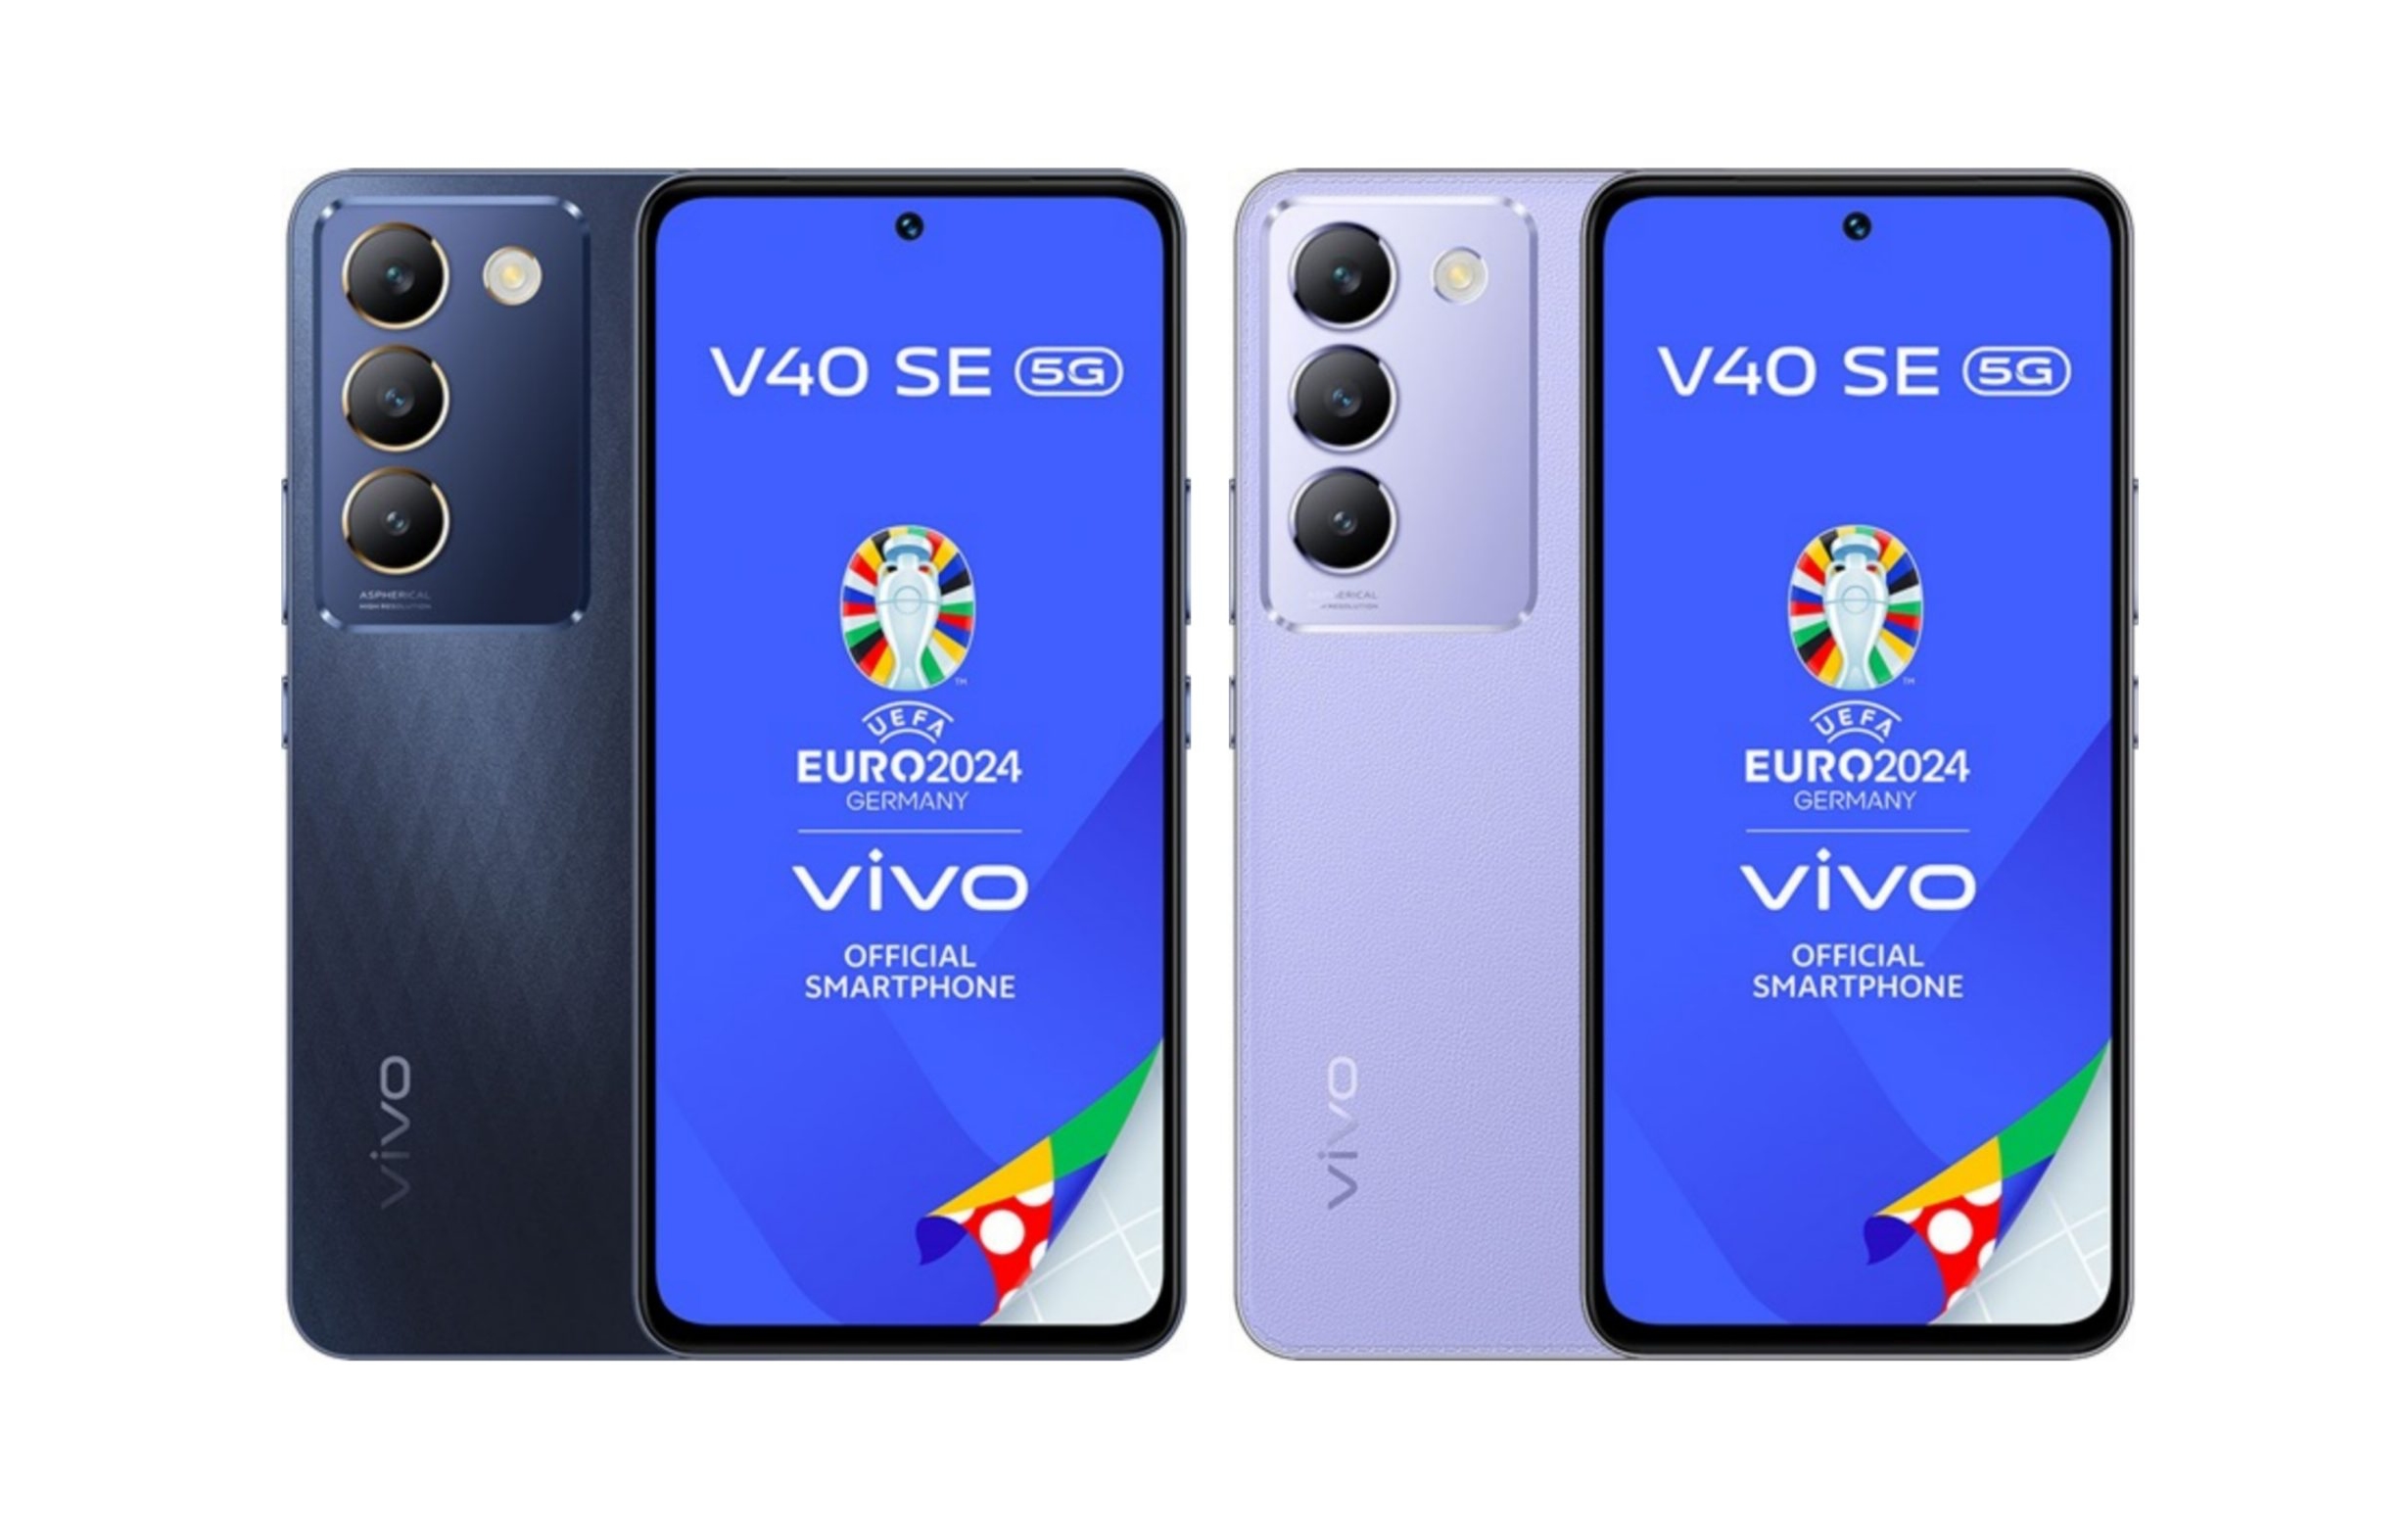 Un insider ha rivelato l'aspetto, le specifiche e il prezzo europeo dello smartphone vivo V40 SE